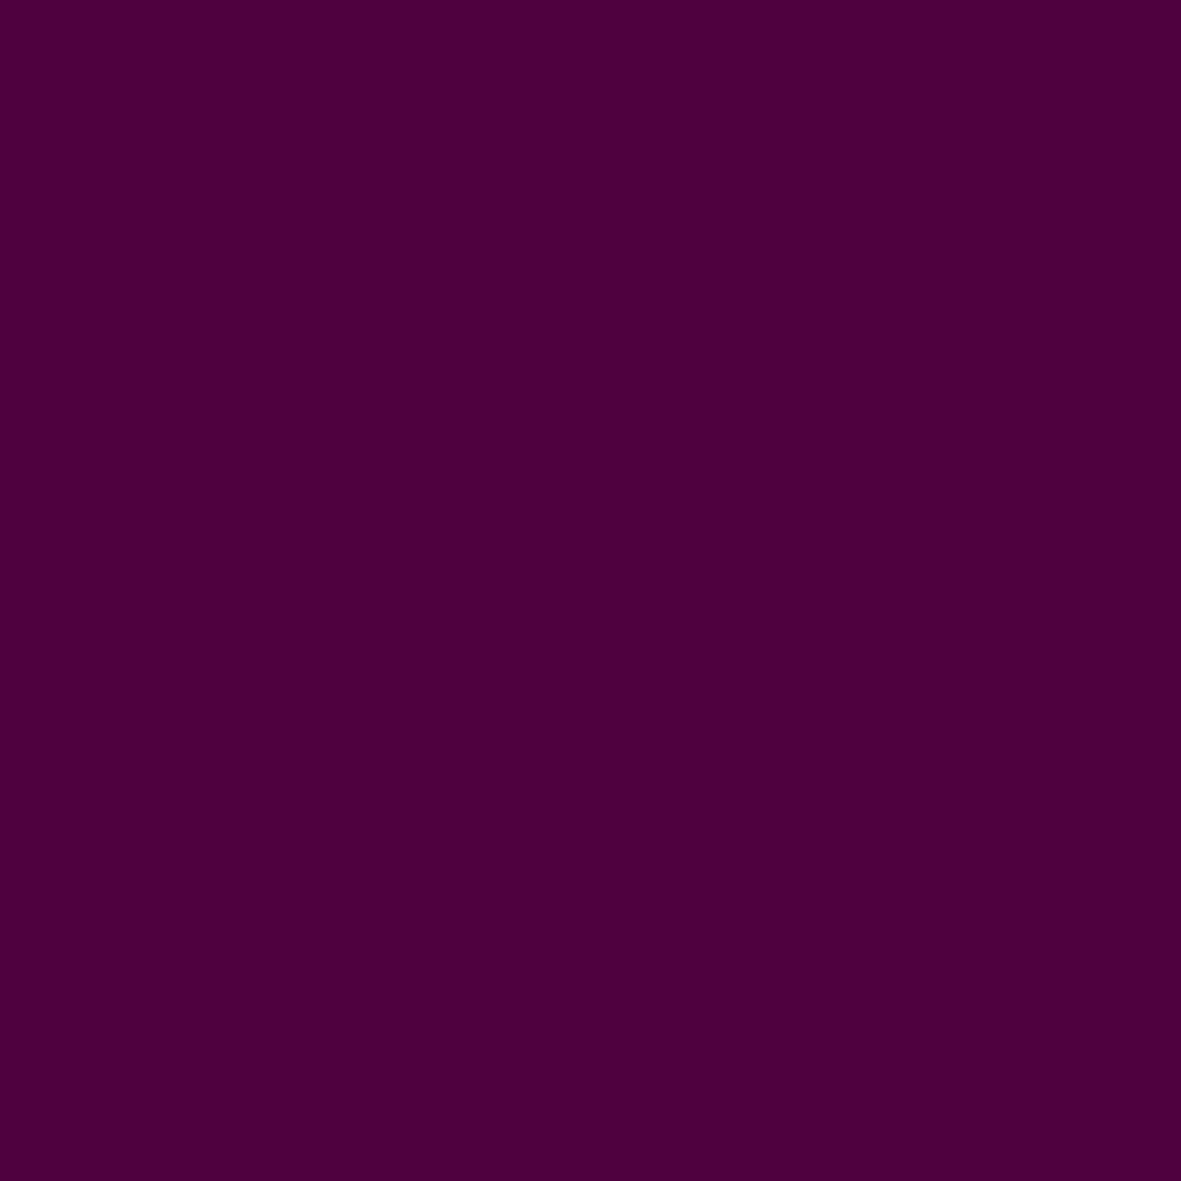 Gravotherm Folienfarbe Bordeaux für Texte, Logos und Muster 